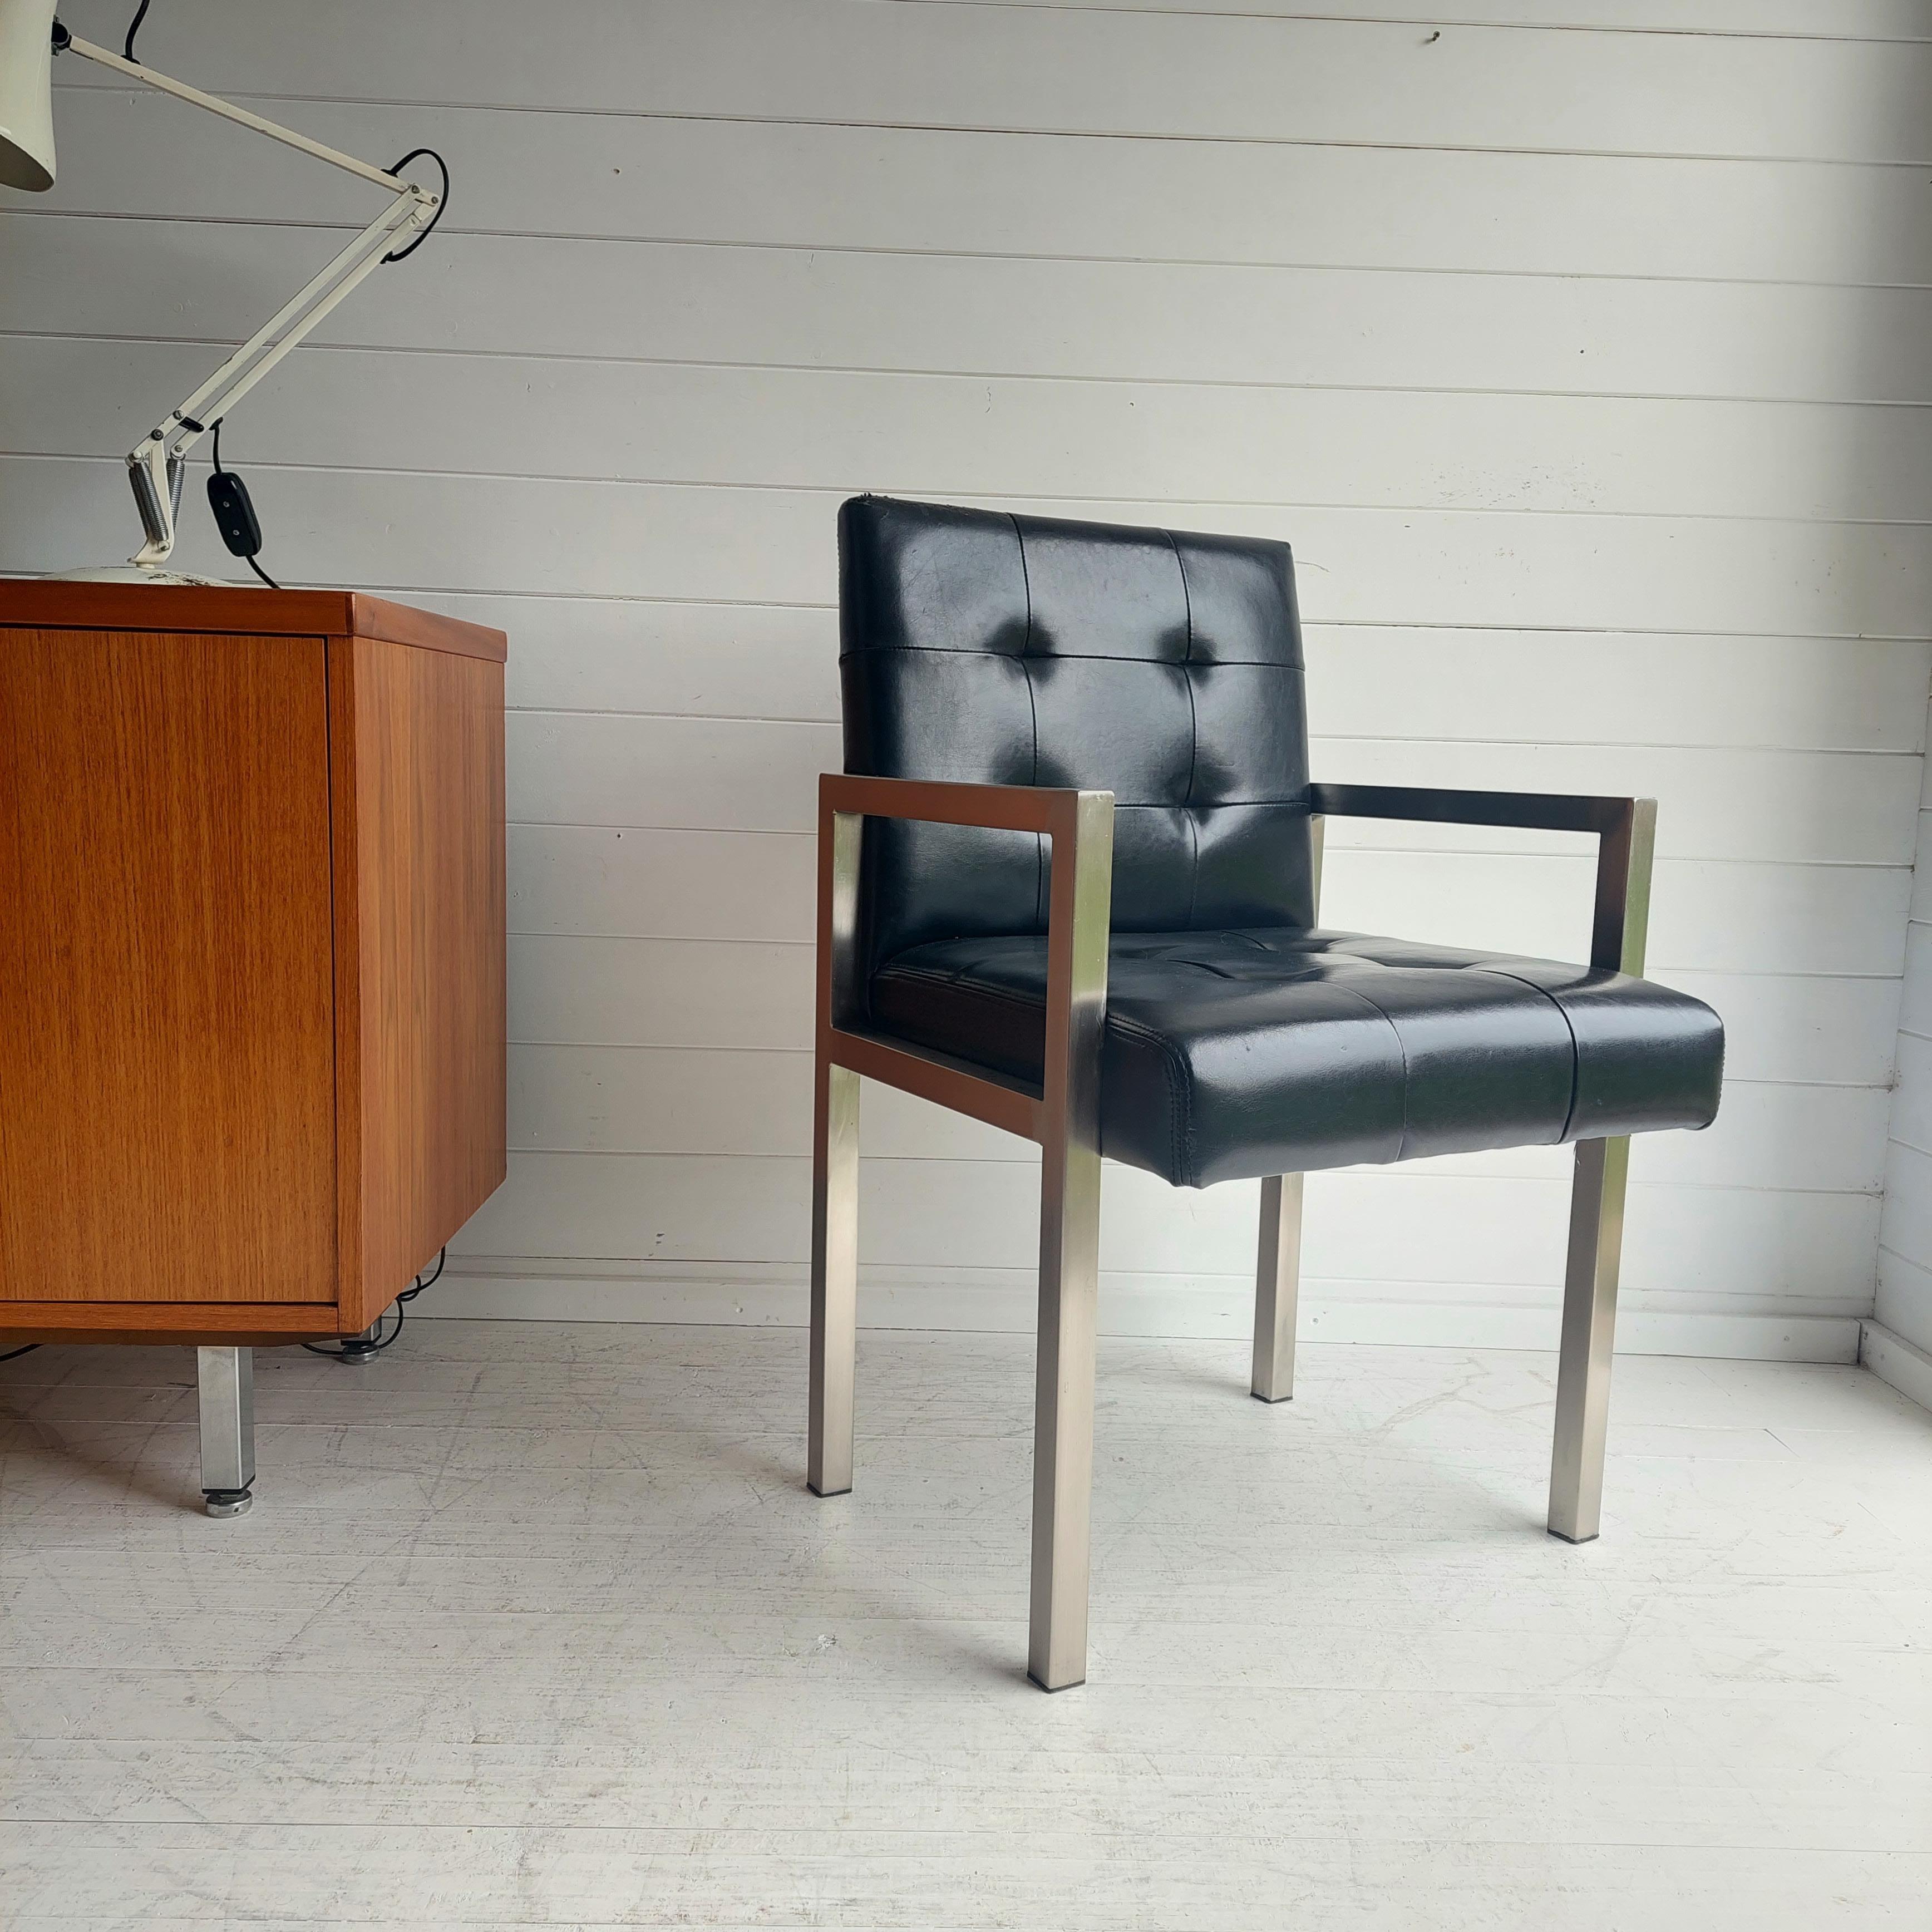 Superbes fauteuils modernes du milieu du siècle conçus sous l'influence de Knoll.

Avec cadres et accoudoirs chromés carrés. 
L'assise et le dossier sont élégamment paddés avec des détails de rembourrage et utilisent le vinyle noir d'origine.

